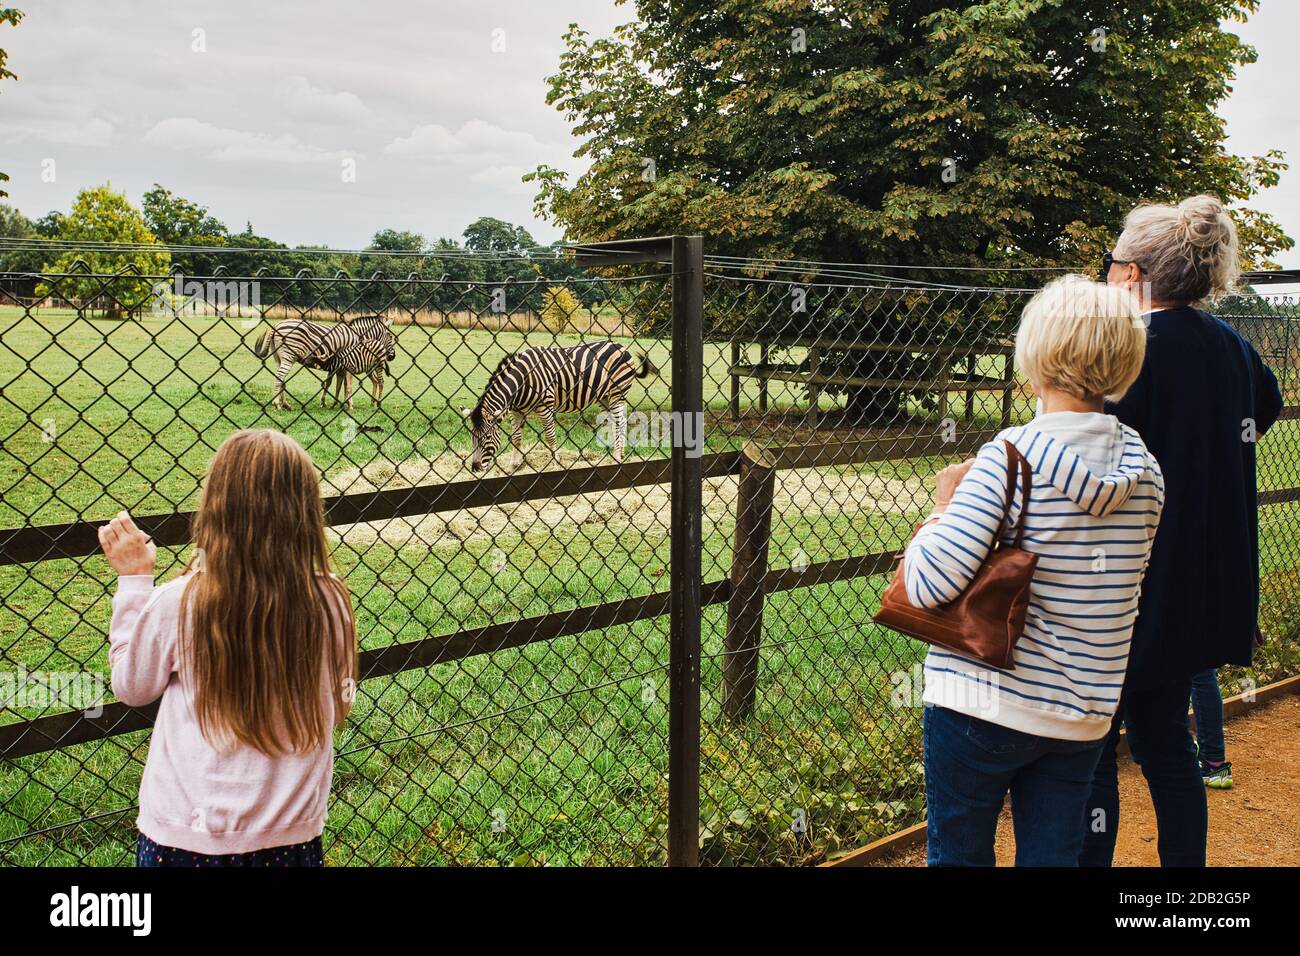 Großbritannien, England, Oxfordshire, Burford, Bradwell Grove, Cotswold Wildlife Park, Besucher im Zebra-Gehege. Stockfoto